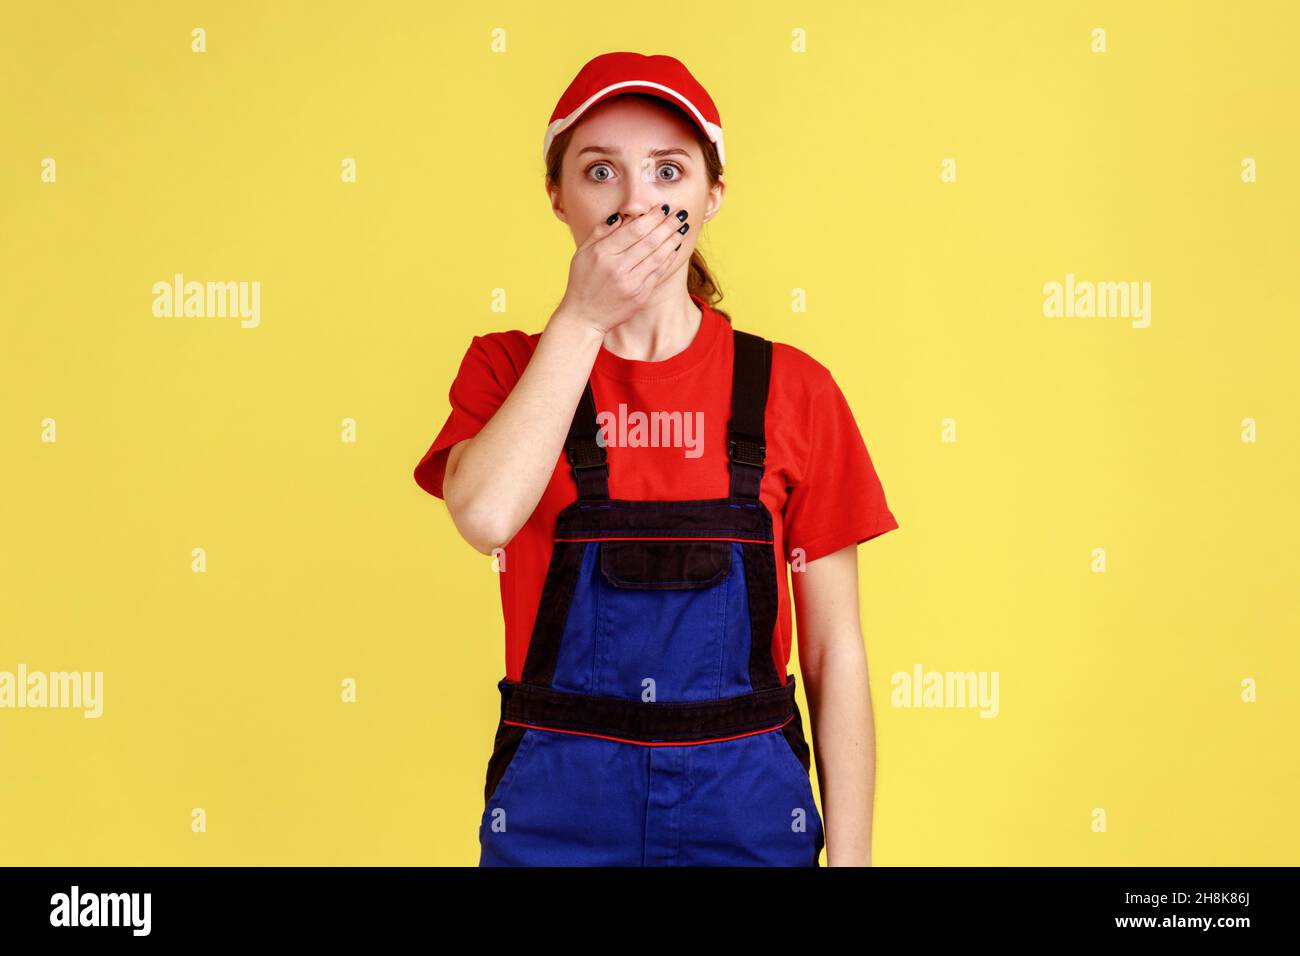 Porträt einer schockierten, staunenden Arbeiterin, die mit großen Augen auf die Kamera steht und den Mund mit einer Handfläche bedeckt, Arbeitskleidung und roter Mütze trägt. Innenaufnahme des Studios isoliert auf gelbem Hintergrund. Stockfoto